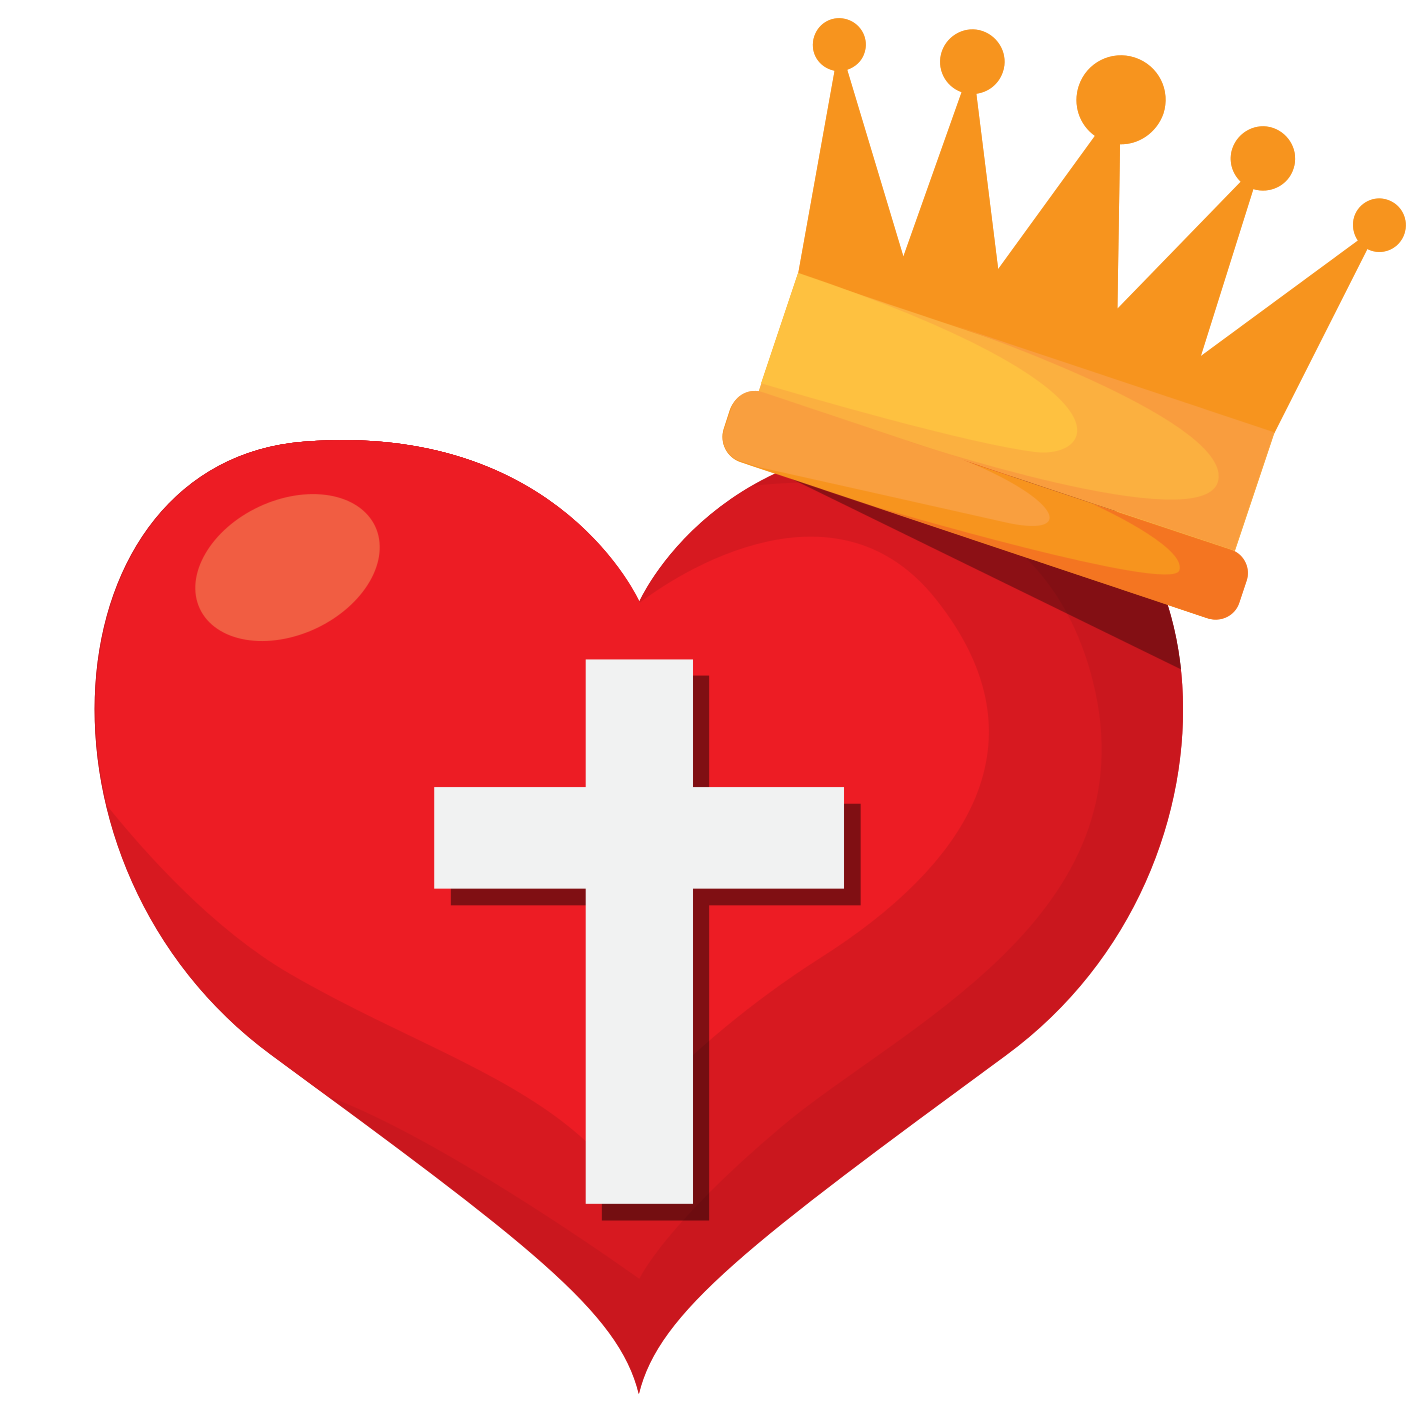 Imagem de alta qualidade da coroa da coroa do coração vermelho